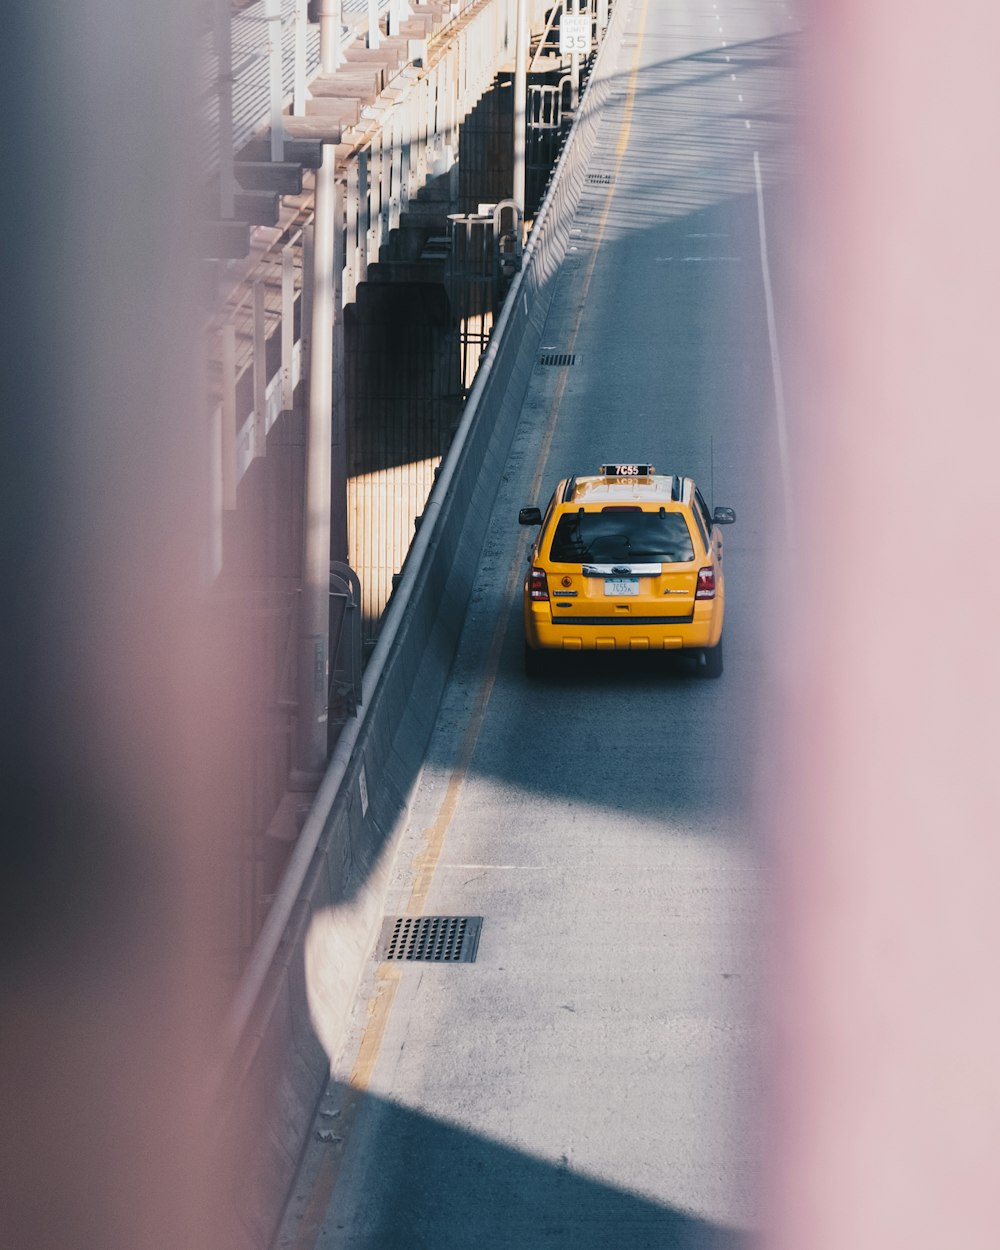 táxi amarelo na estrada